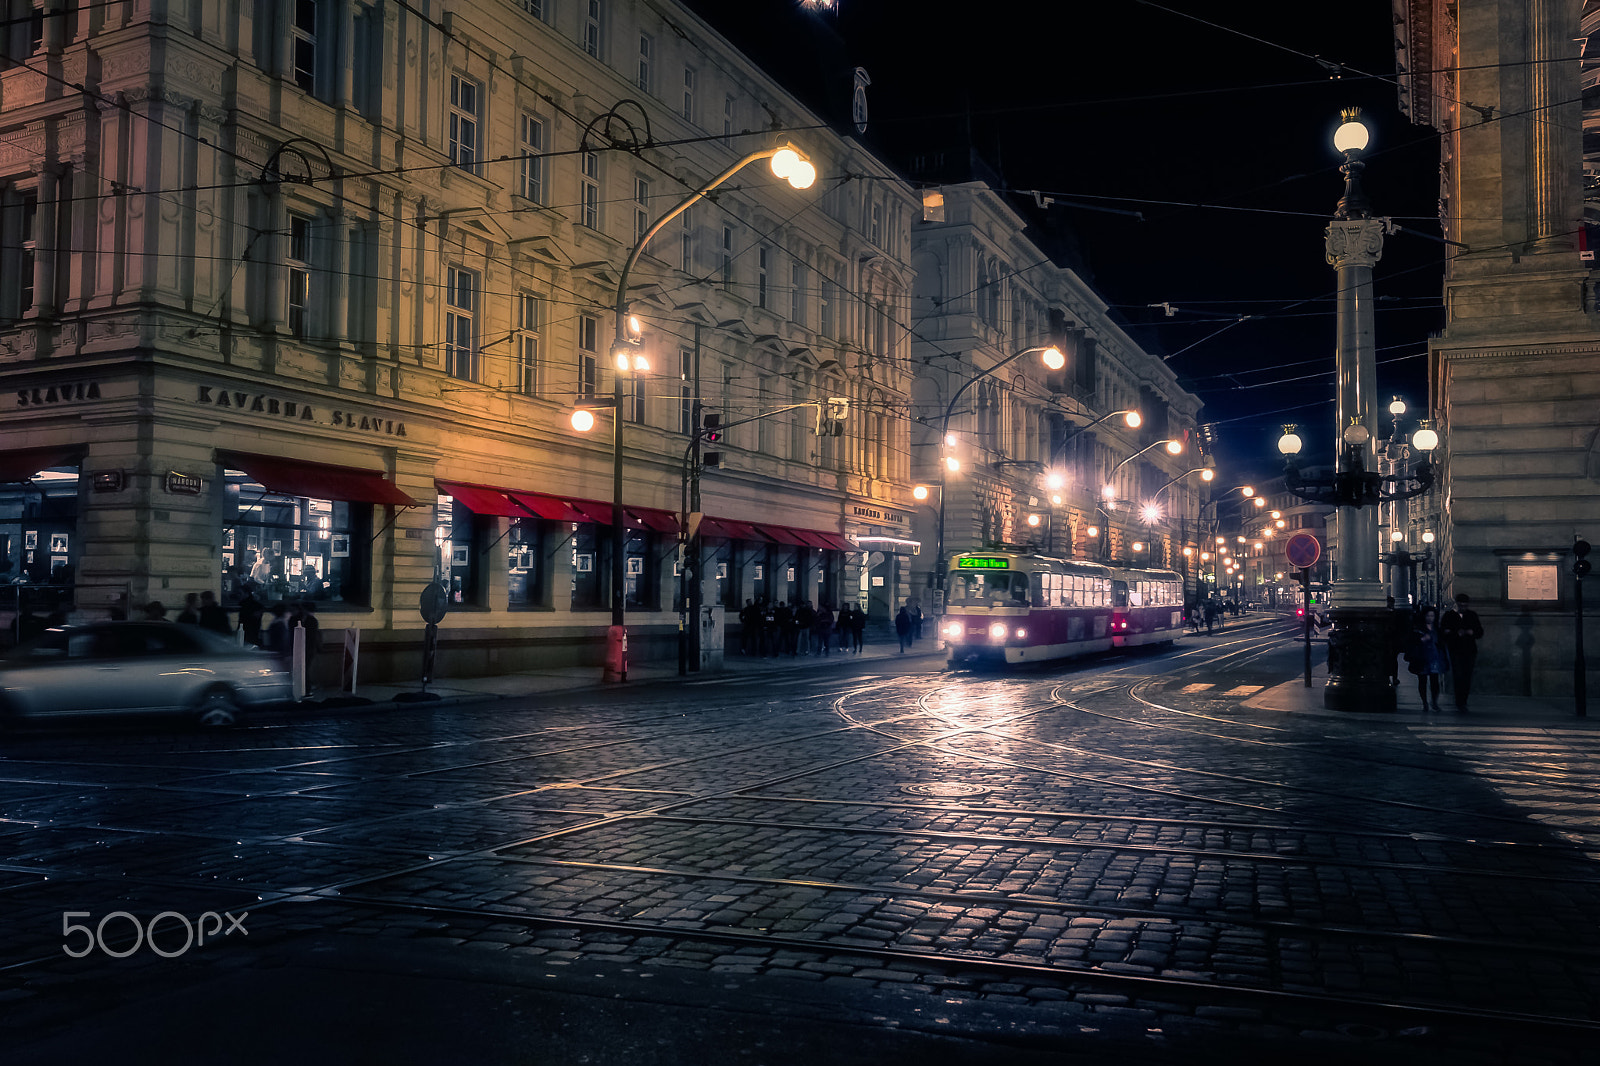 Canon EOS 80D + Voigtlander Color Skopar 20mm f/3.5 SLII Aspherical sample photo. Prague at night v.2 photography